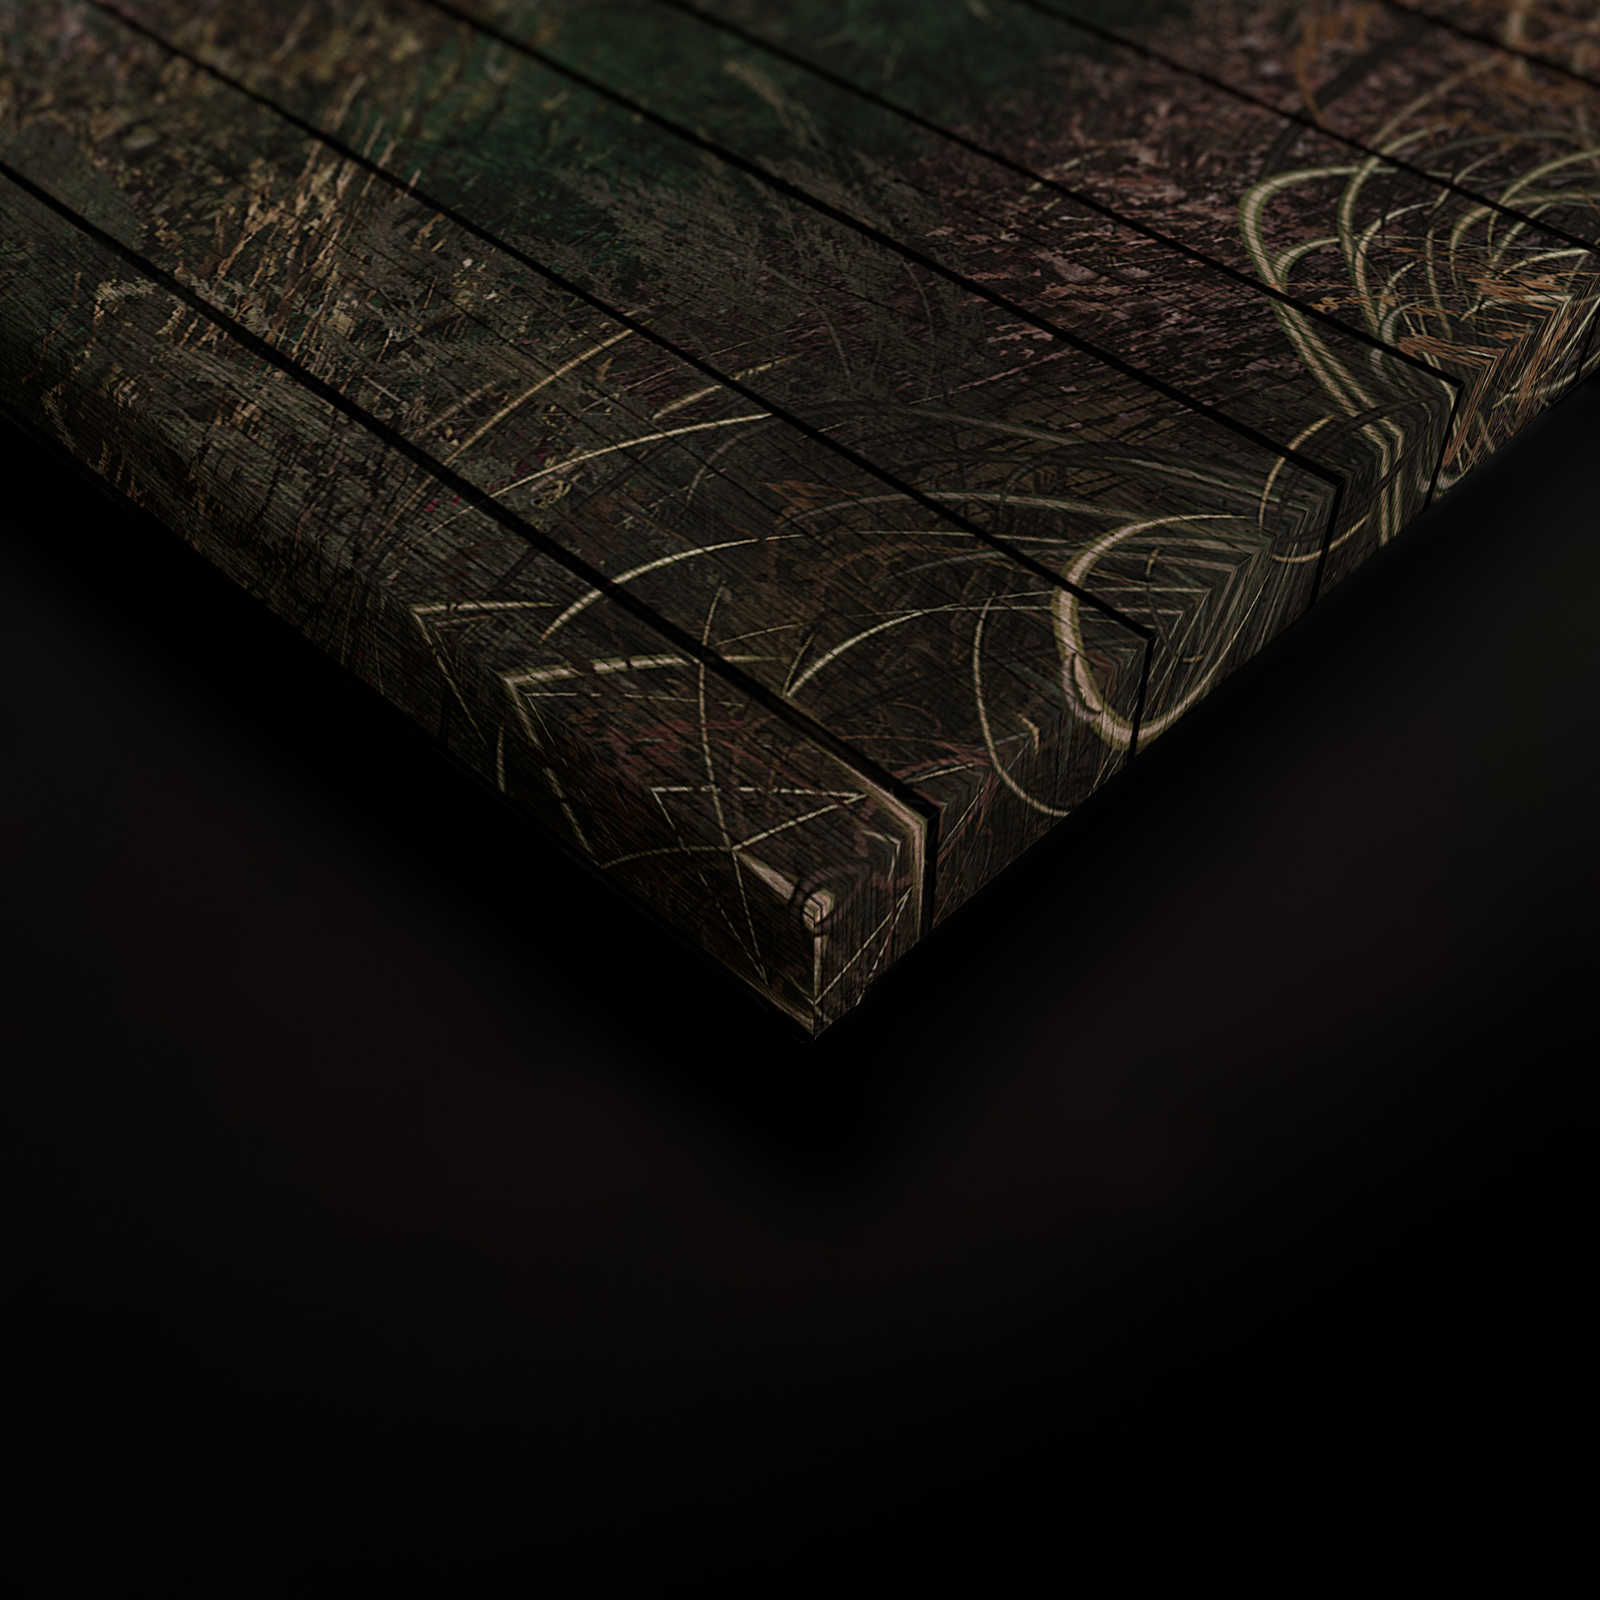             Fantasia 3 - Quadro su tela tinta unicacorno con aspetto di tavola di legno - 0,90 m x 0,60 m
        